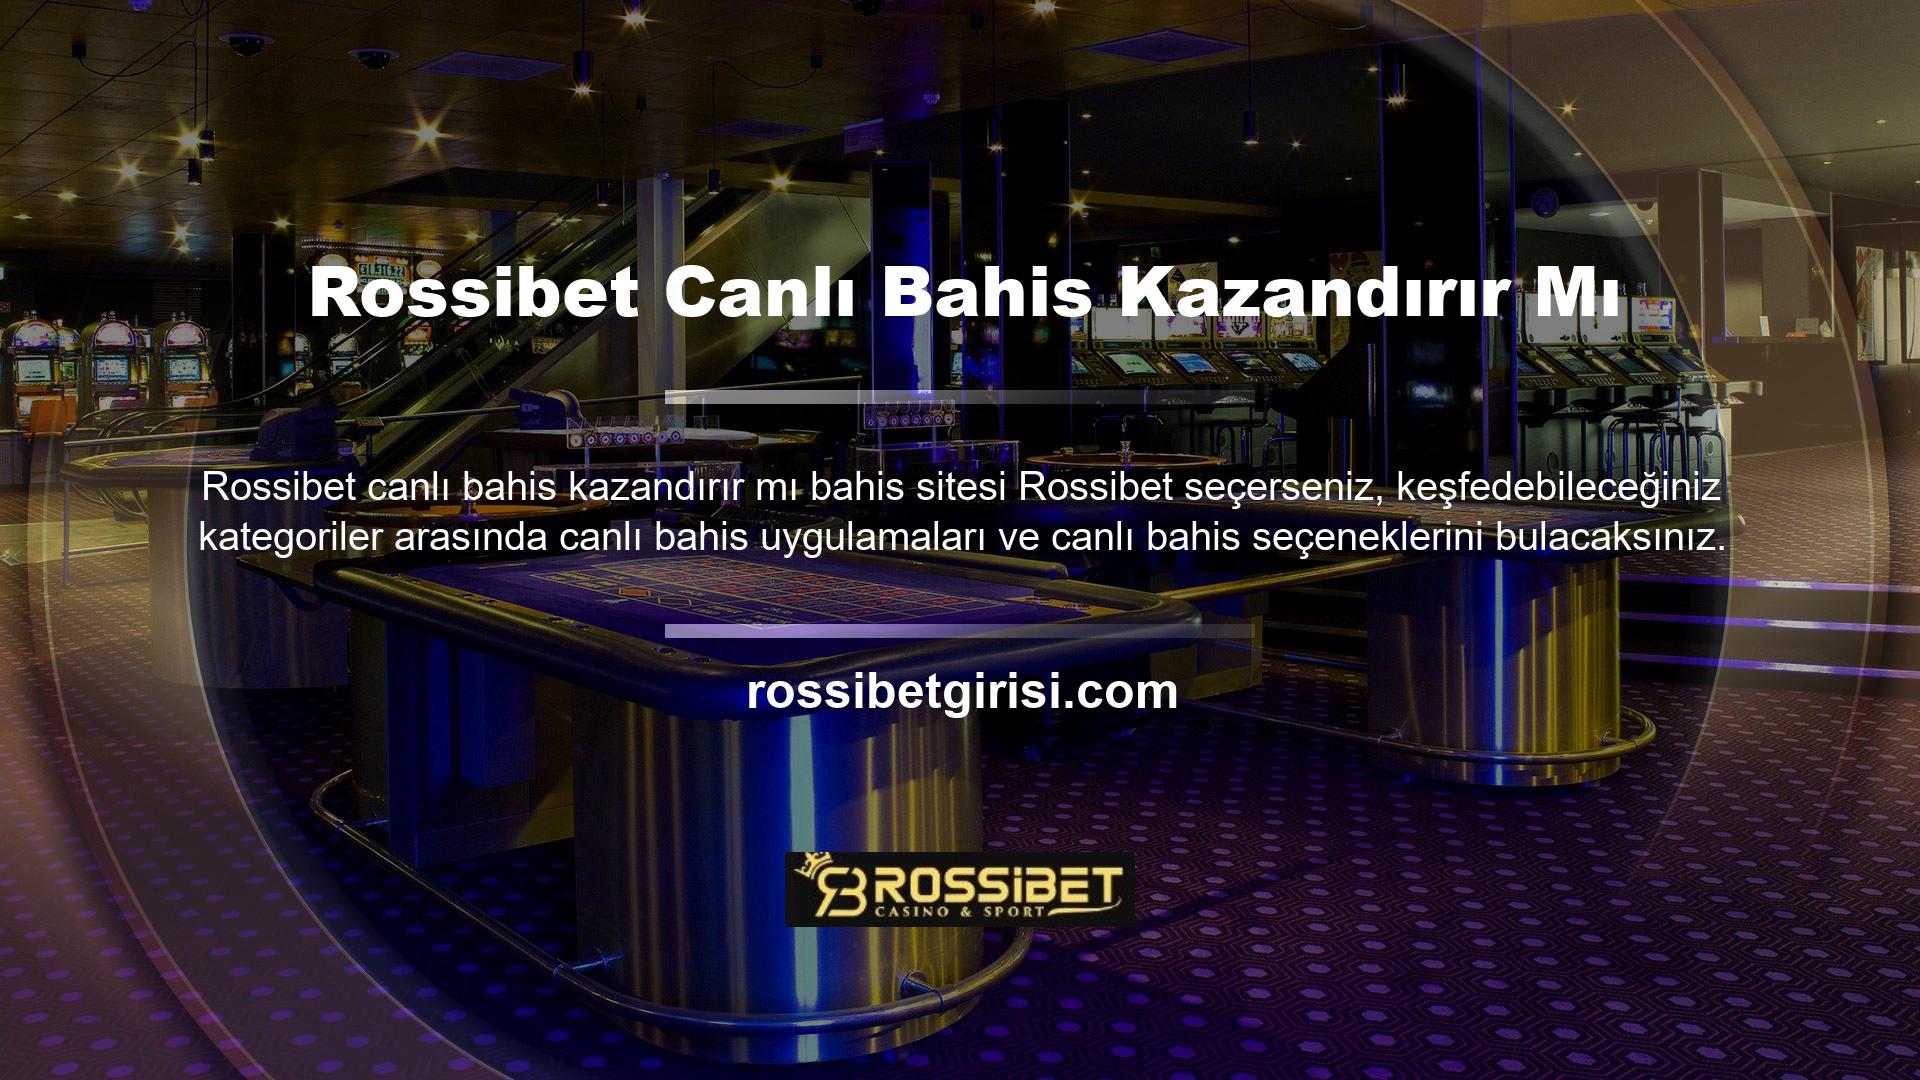 Rossibet web sitesini kullanan herkes sitenin canlı bahis bölümünden yararlanabilir